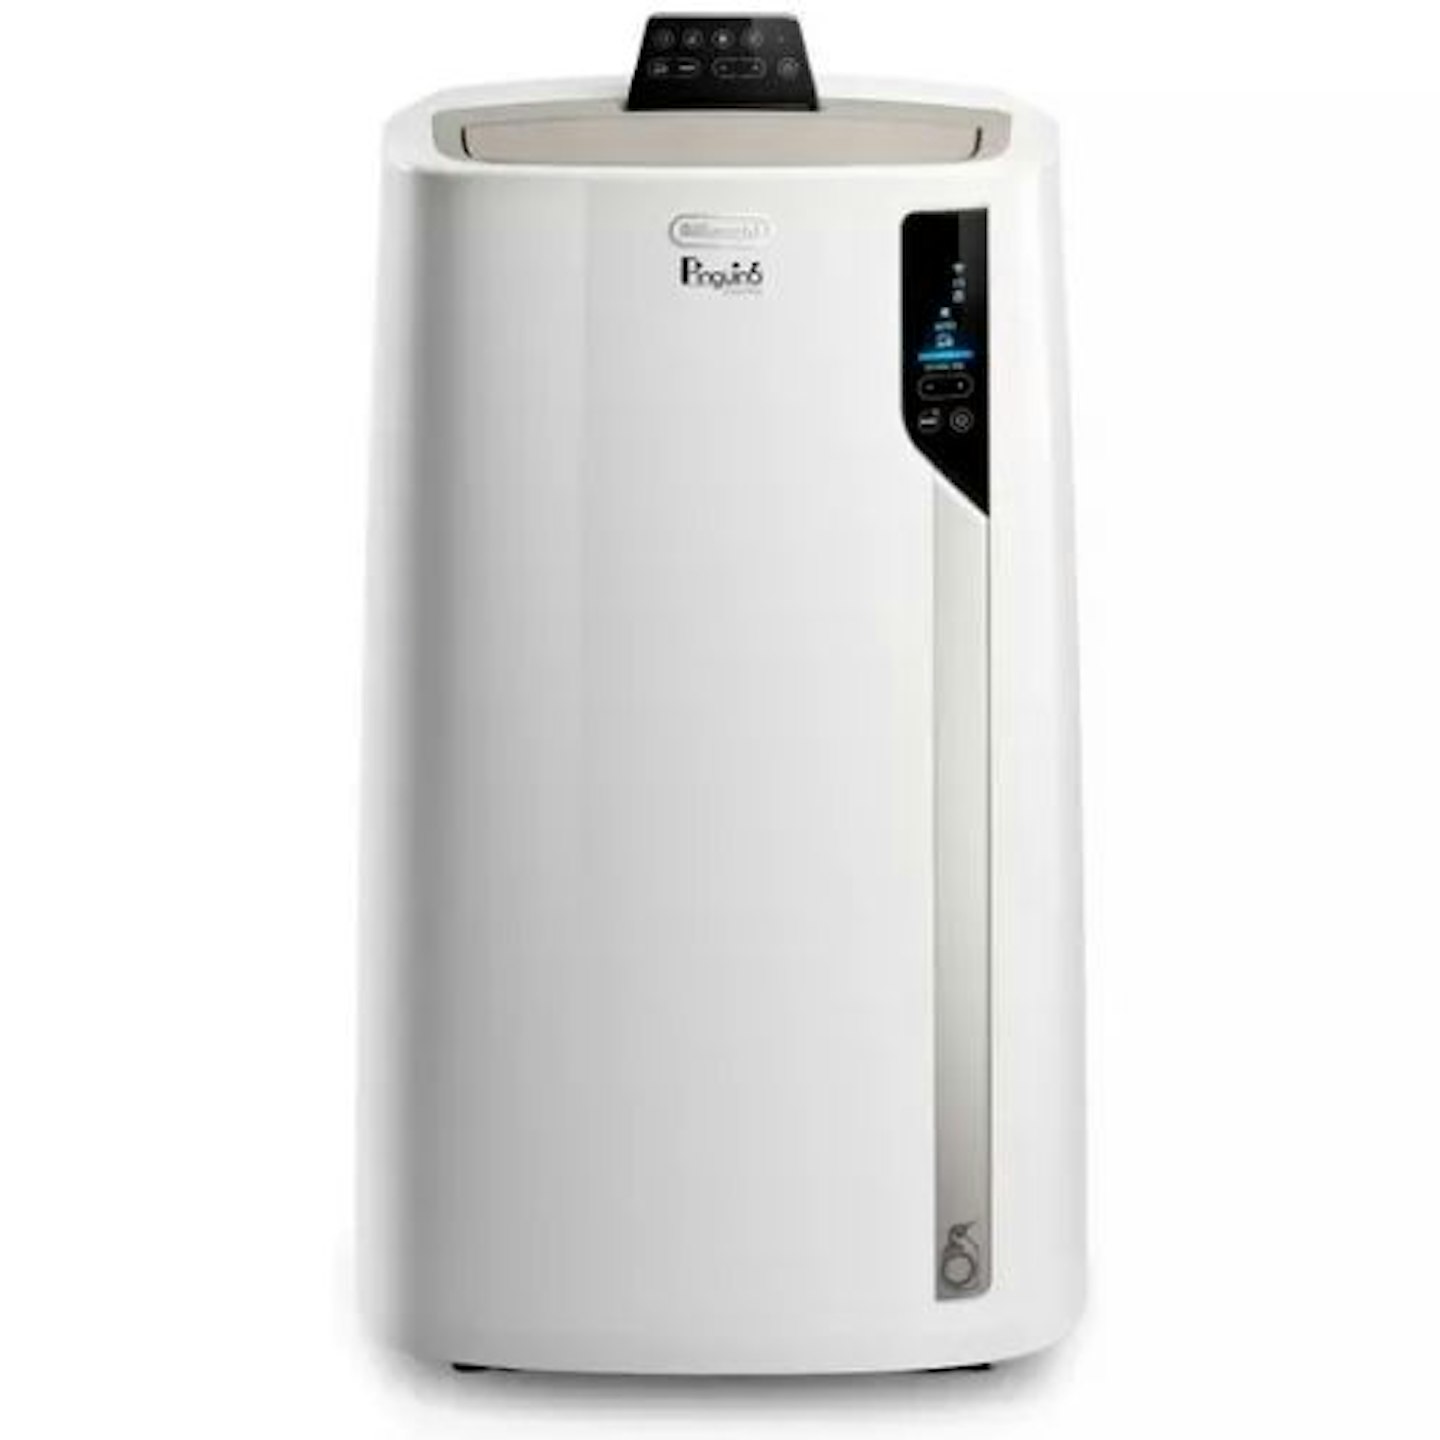 De'Longhi EL112CST Smart Air Conditioner